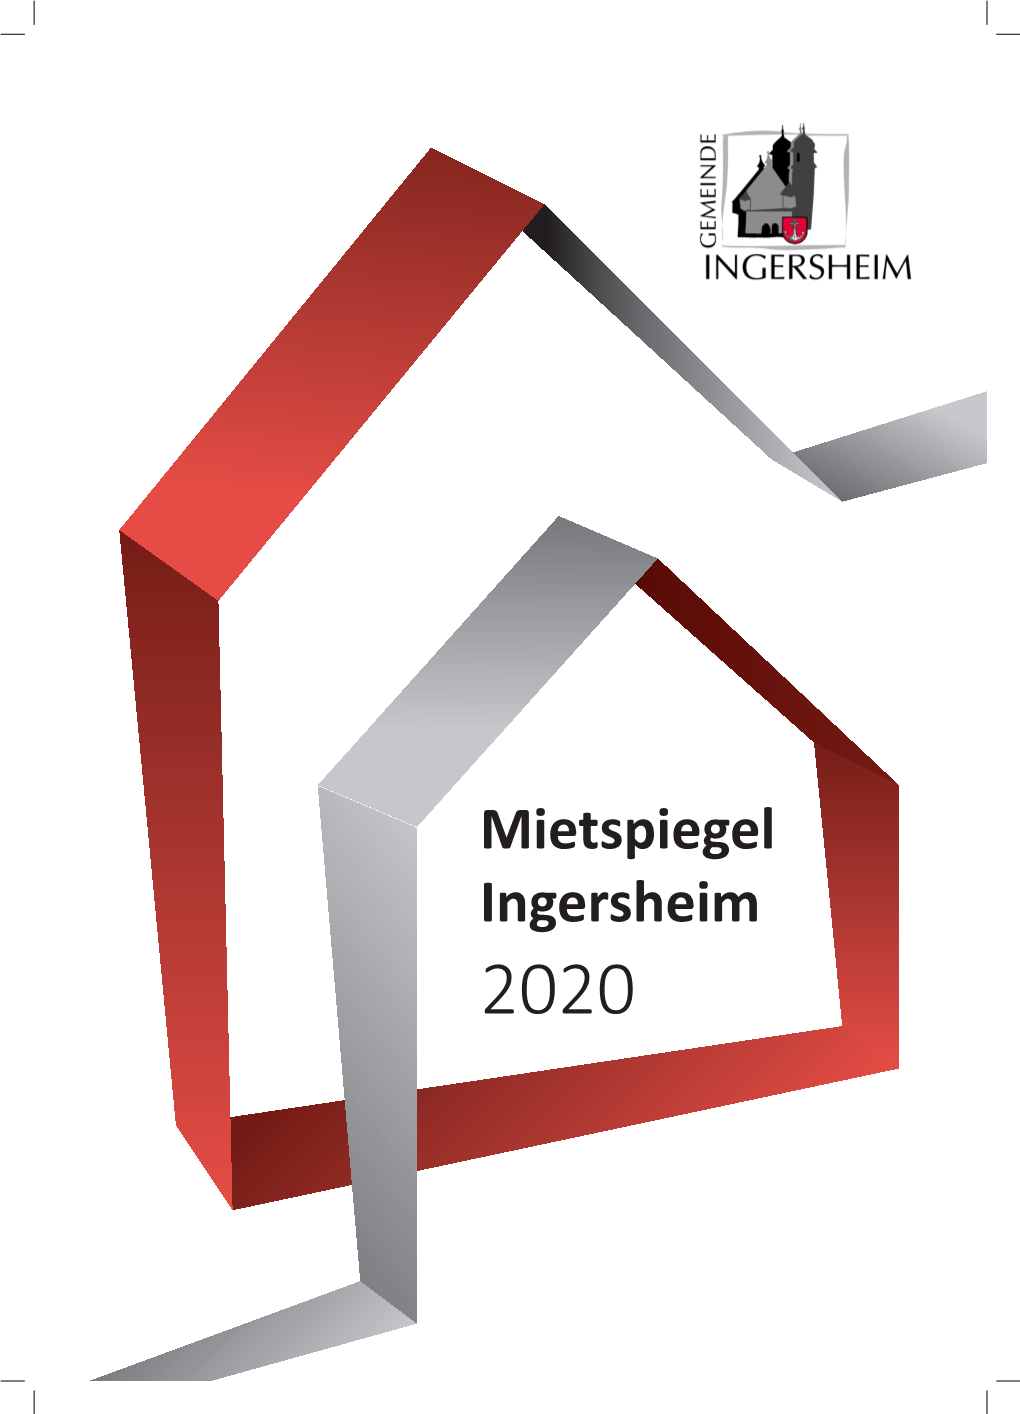 Mietspiegel Ingersheim 2020